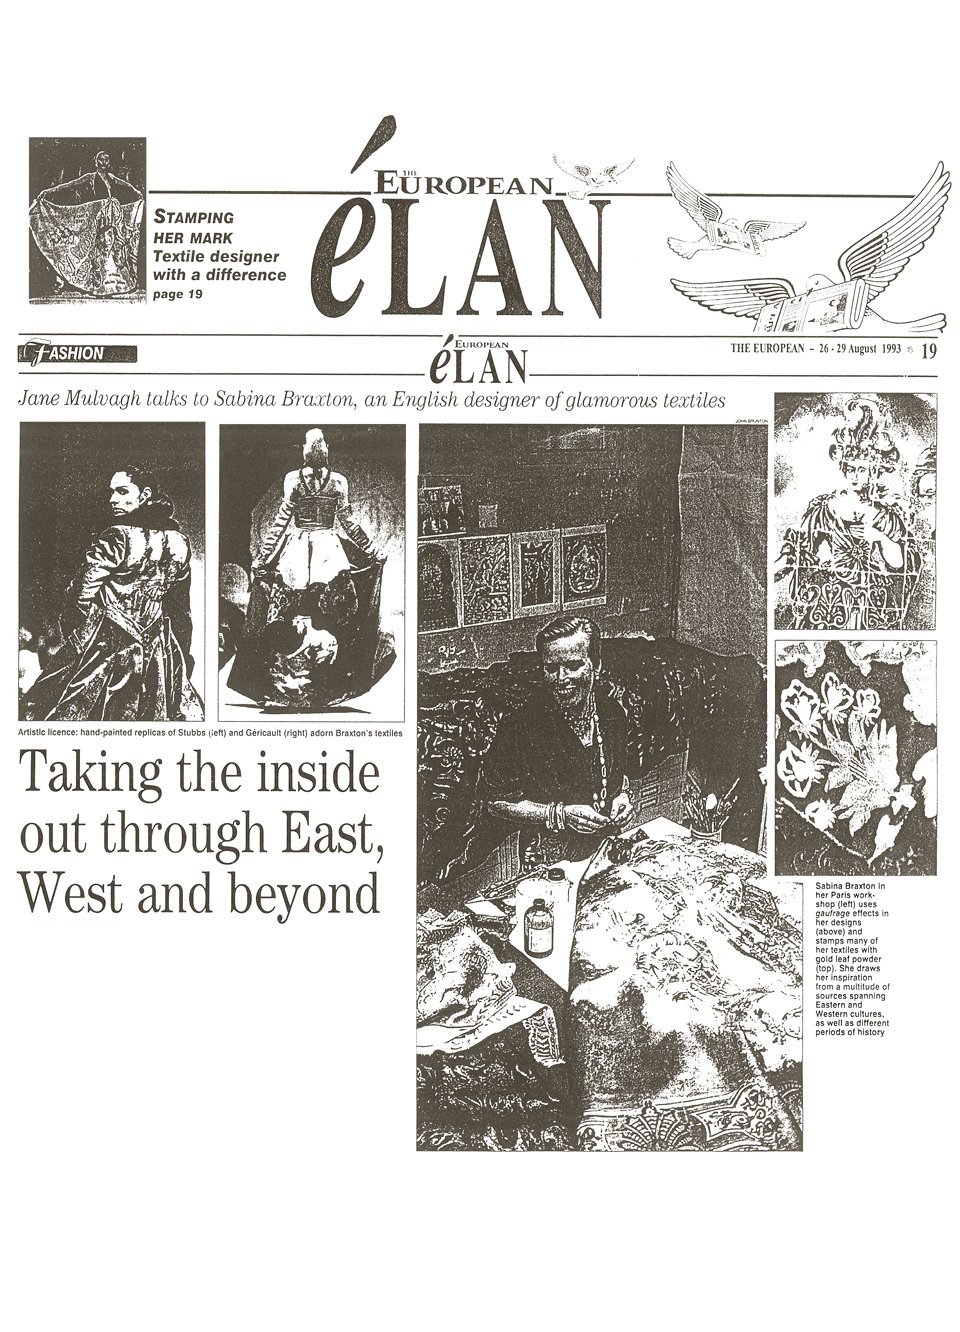 The European - August 1993